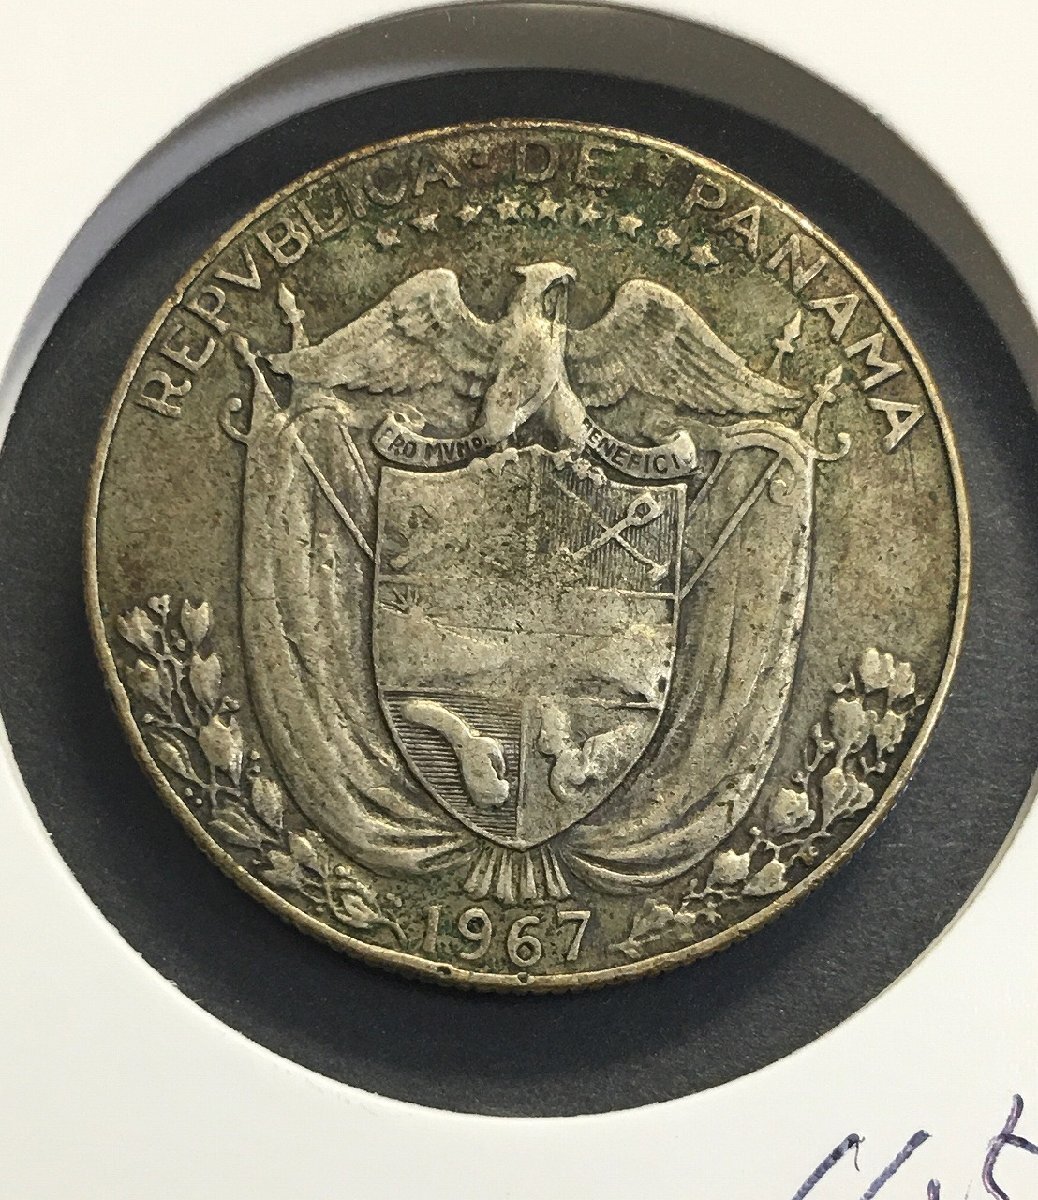 パナマ銀貨 1/2-バルボス 1967年 MEDIO・BALBOA 量目12.5g 美品 収集ワールド_写真実物「収集ワールド」